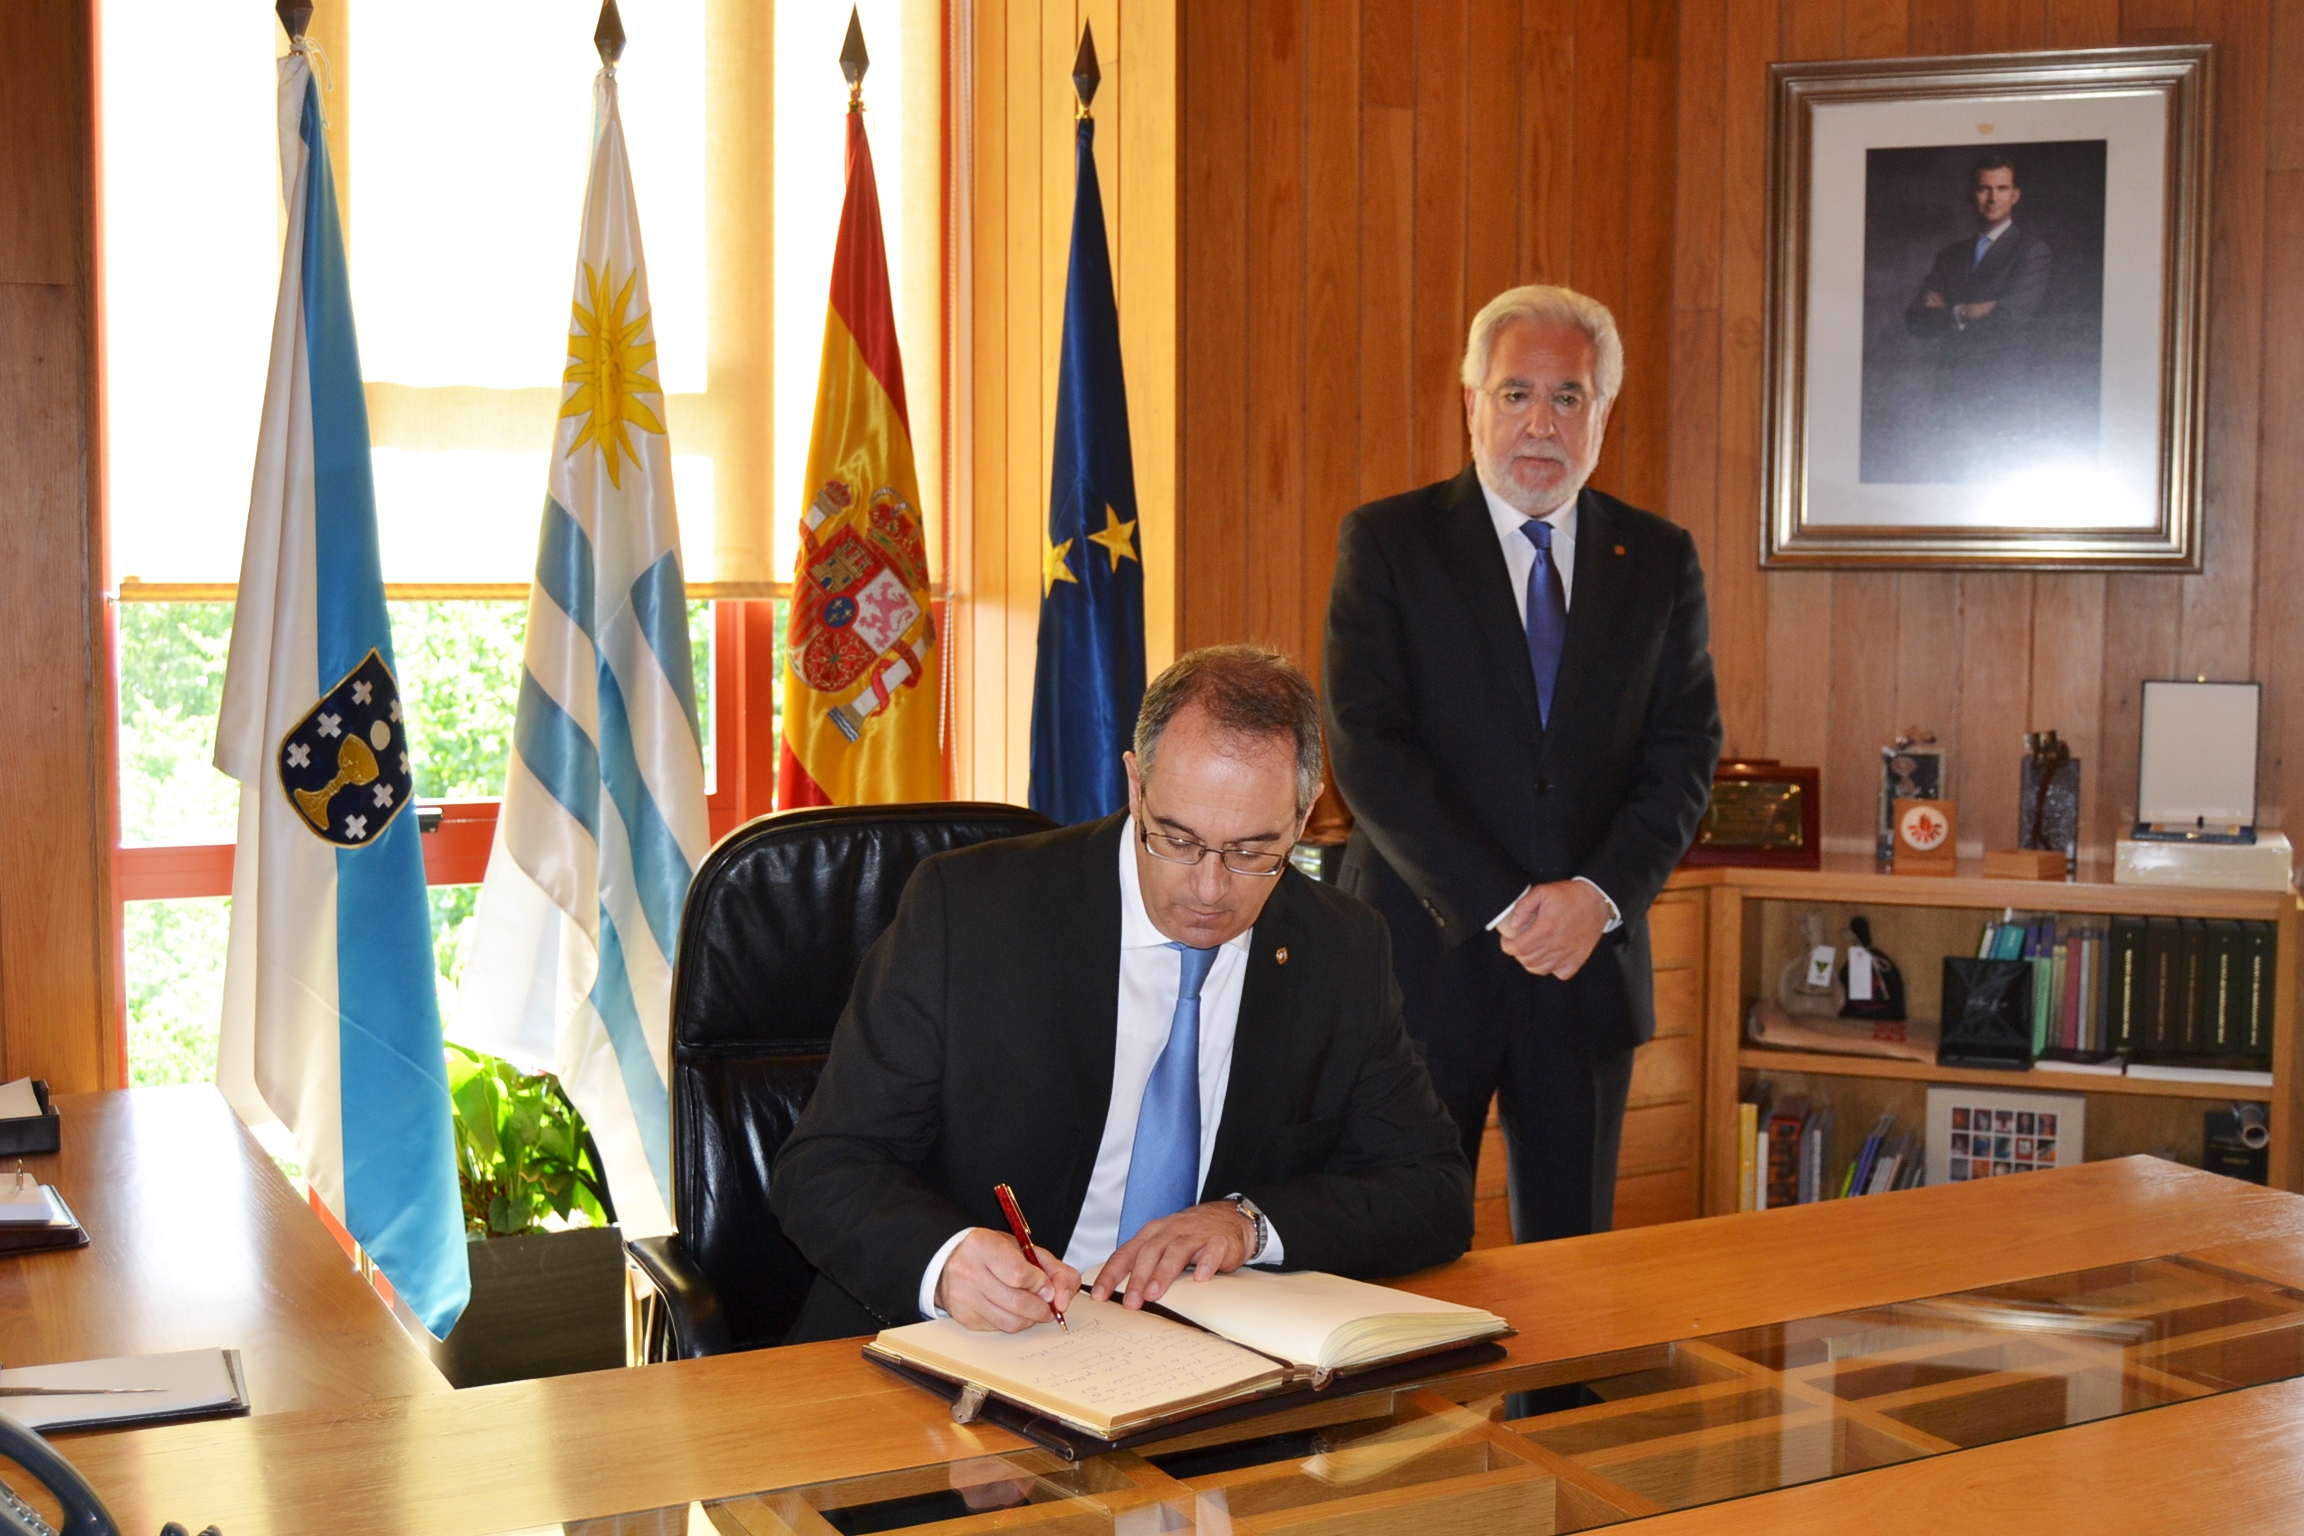 O presidente da Cámara de Representantes de Uruguai visitou o Parlamento de Galicia